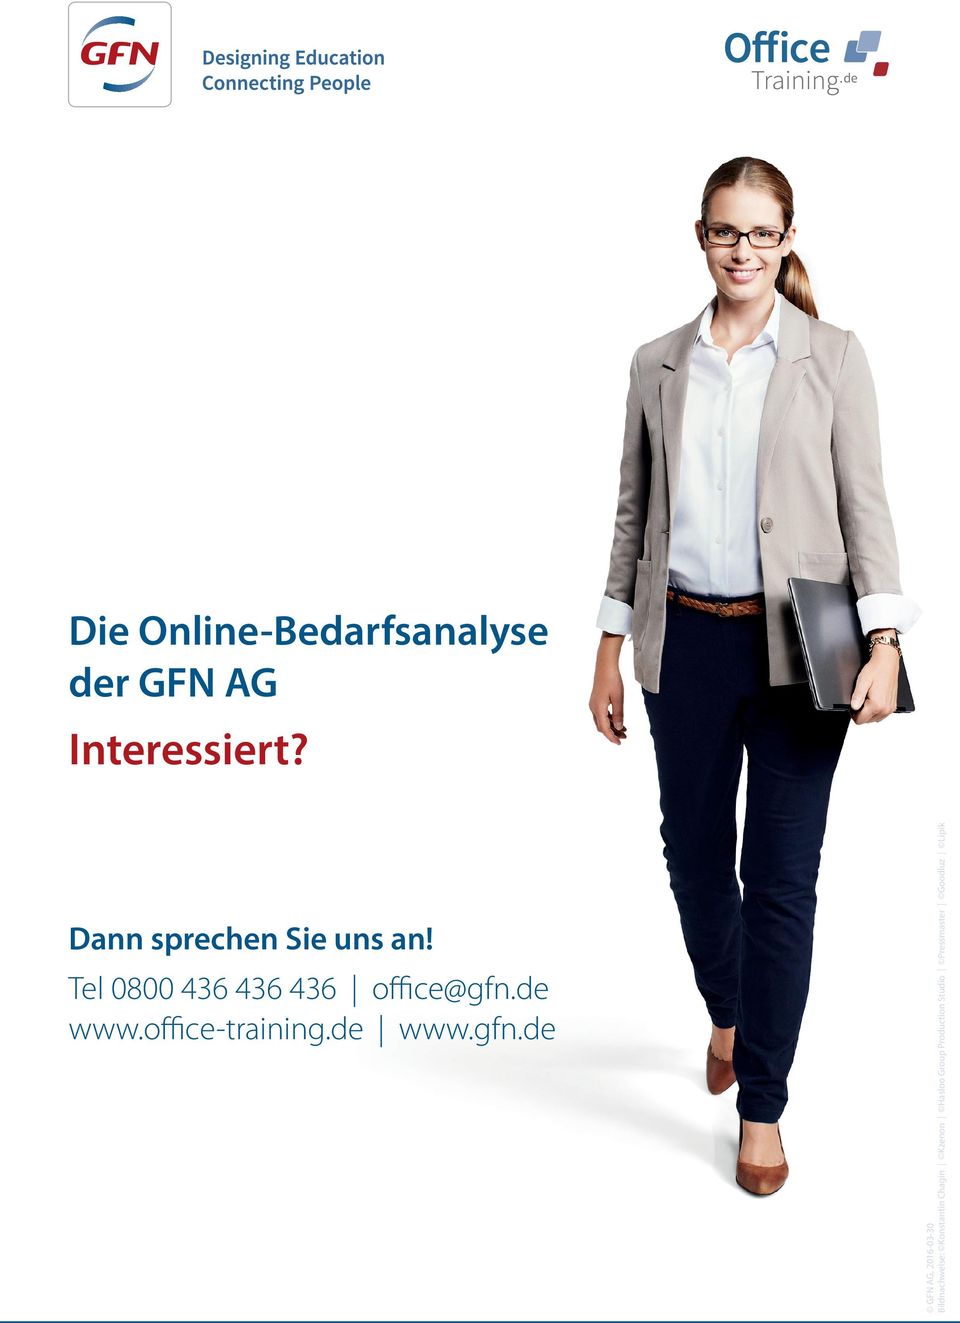 office-training.de www.gfn.